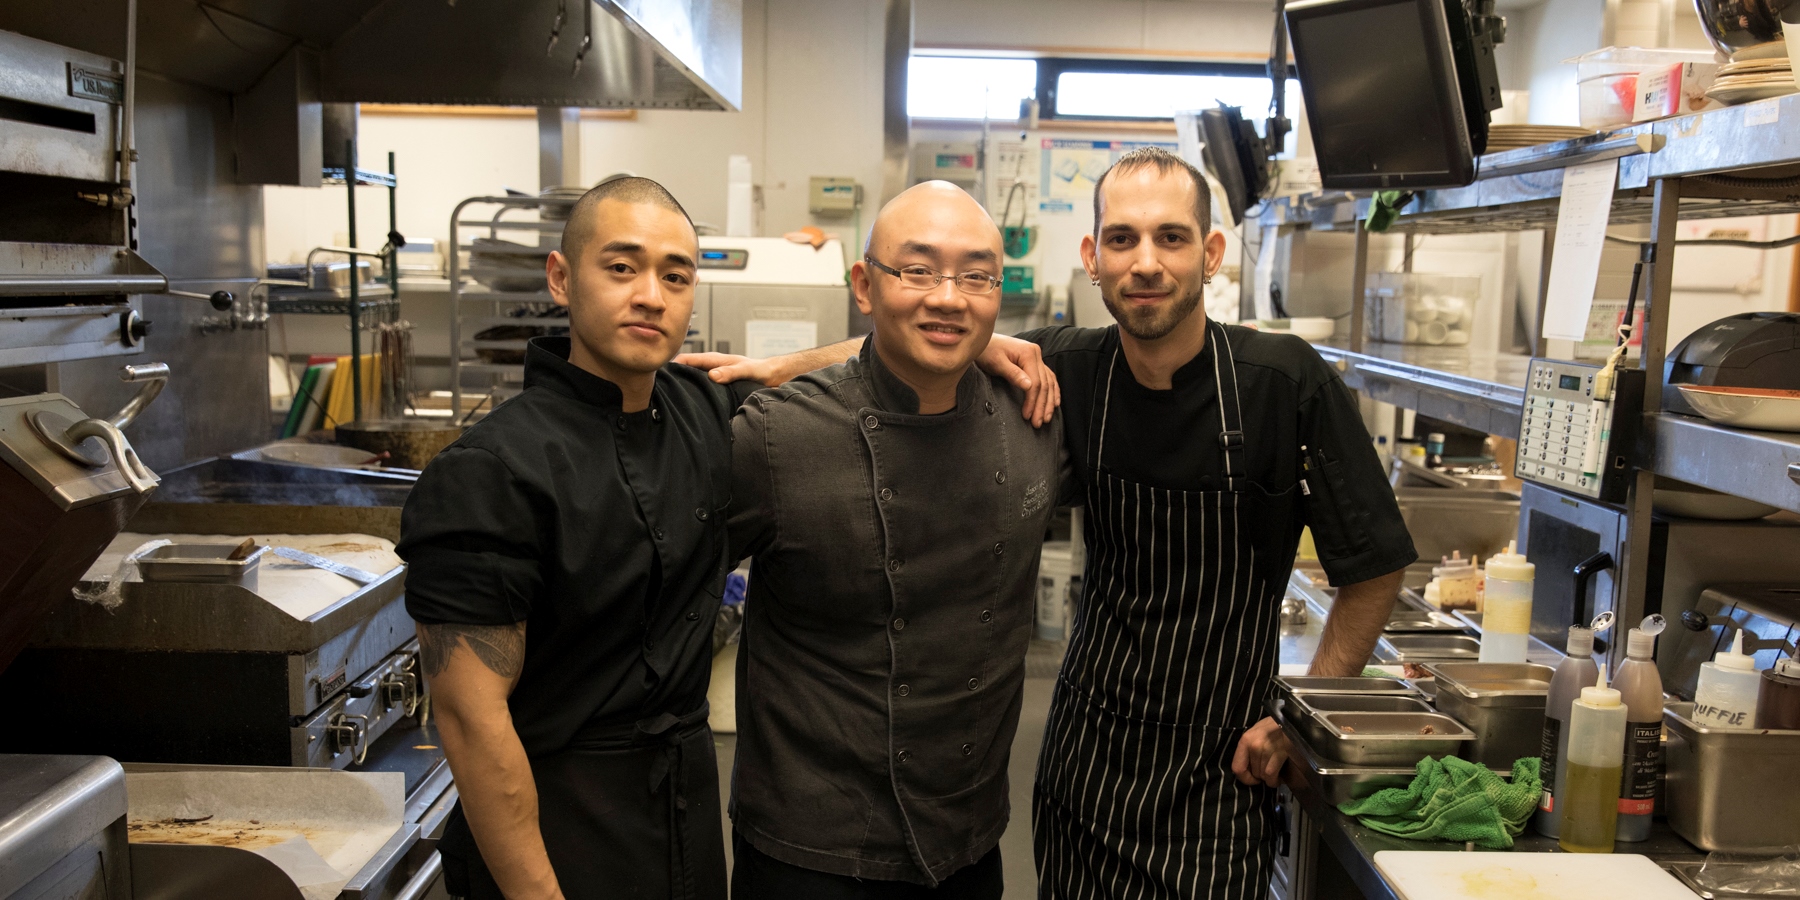 Danzen, Jason, and Joe at the Riverway restaurant kitchen